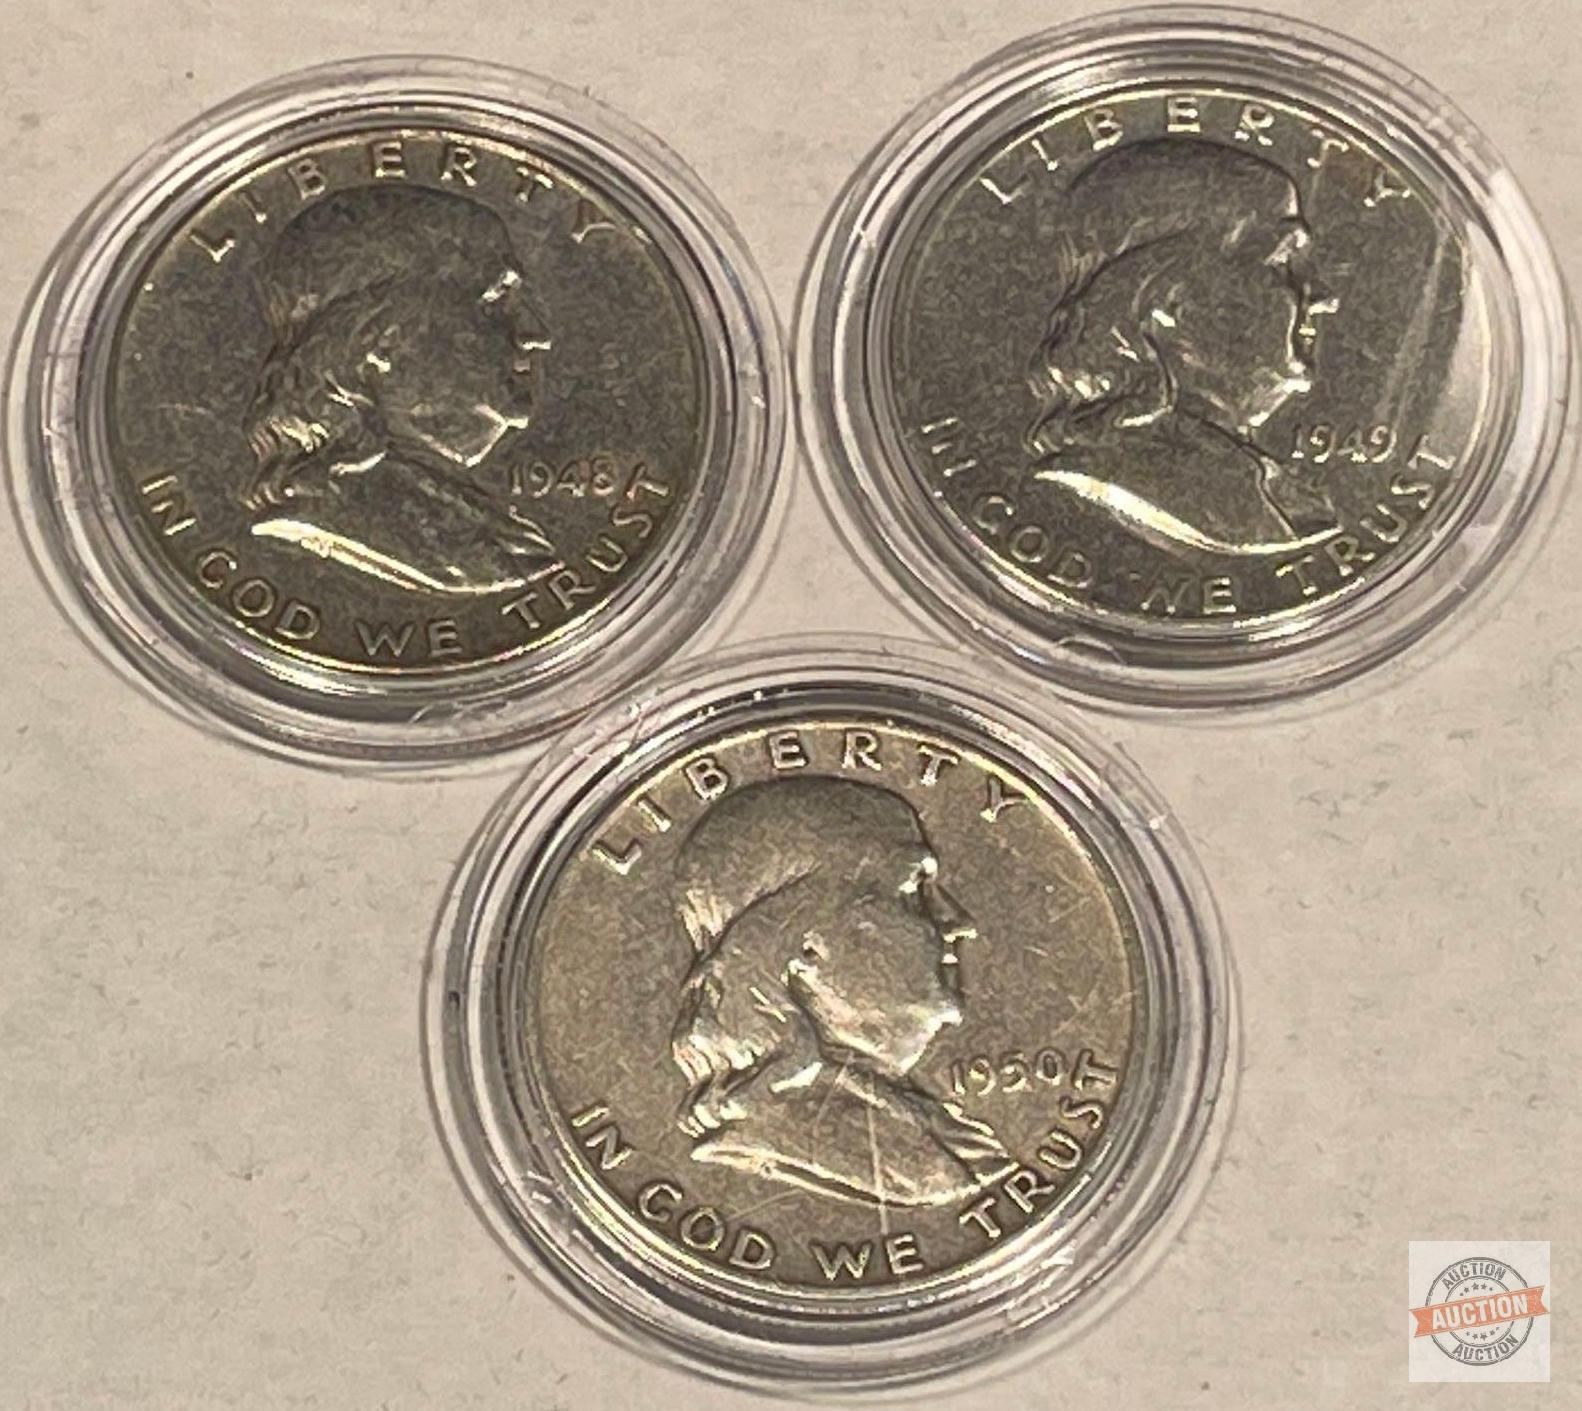 14 Benjamin Franklin Half Dollars, between 1948-1963